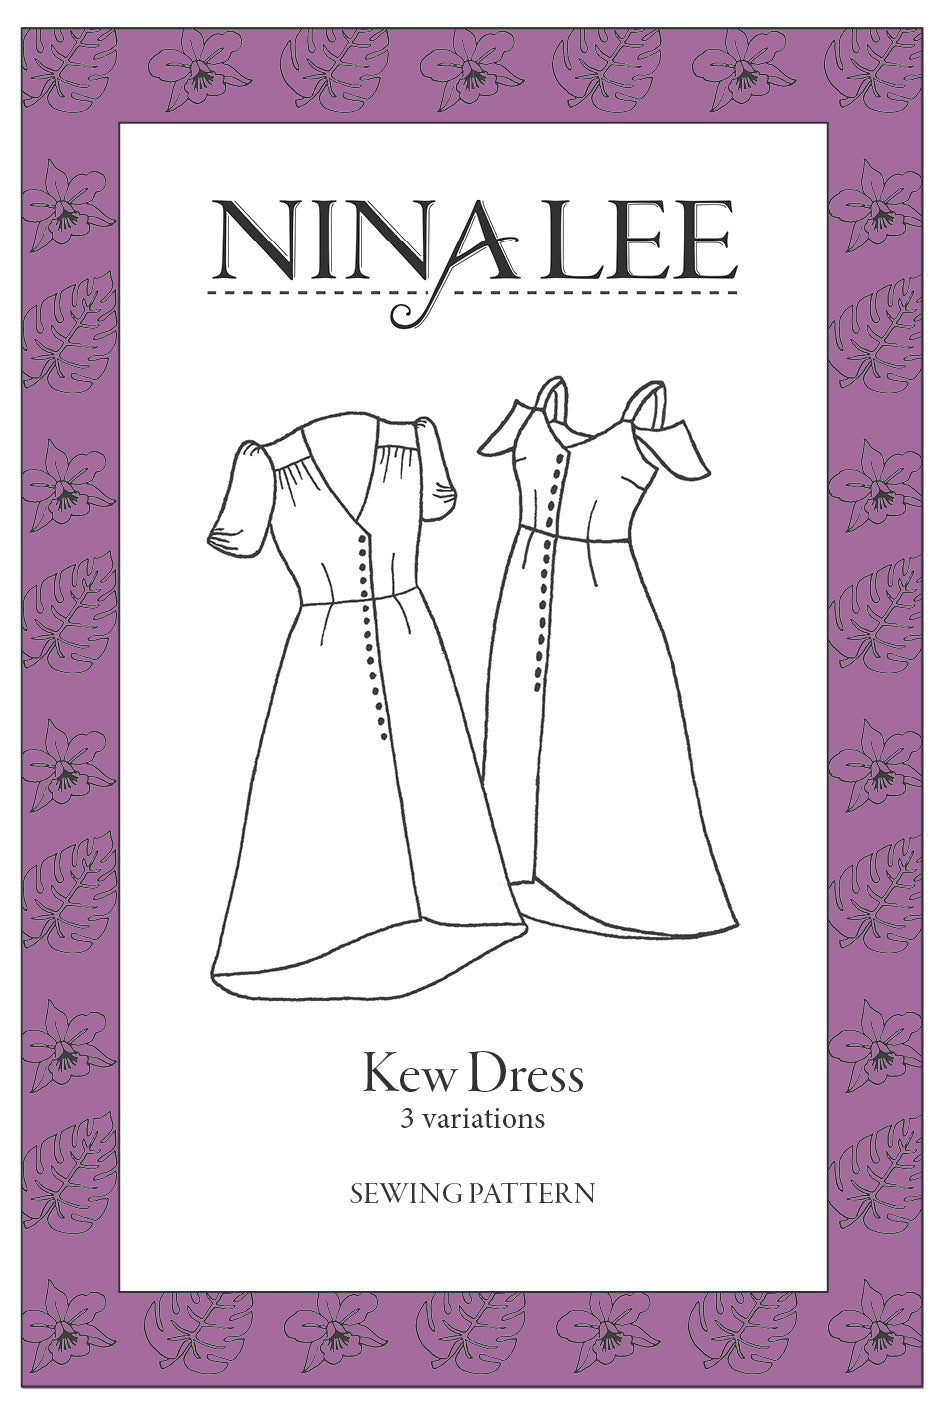 NINALEE Kew Dress Sewing Pattern